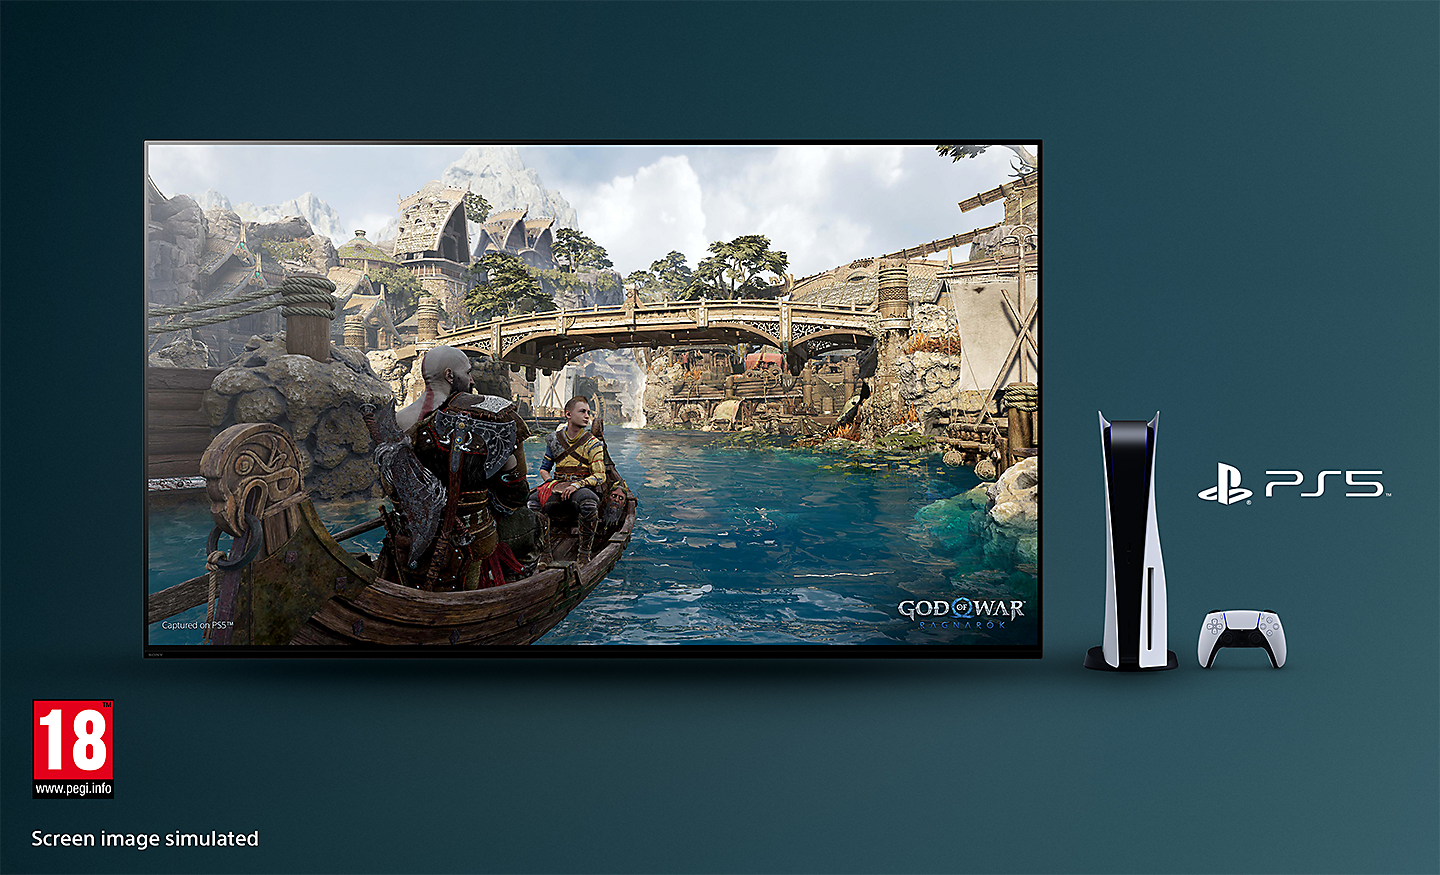 Televizor BRAVIA sa snimkom ekrana igre God of War: Ragnarok koji prikazuje čamac na reci i most u pozadini uz konzolu PS5™, kontroler i logotip PS5™ sa desne strane televizora